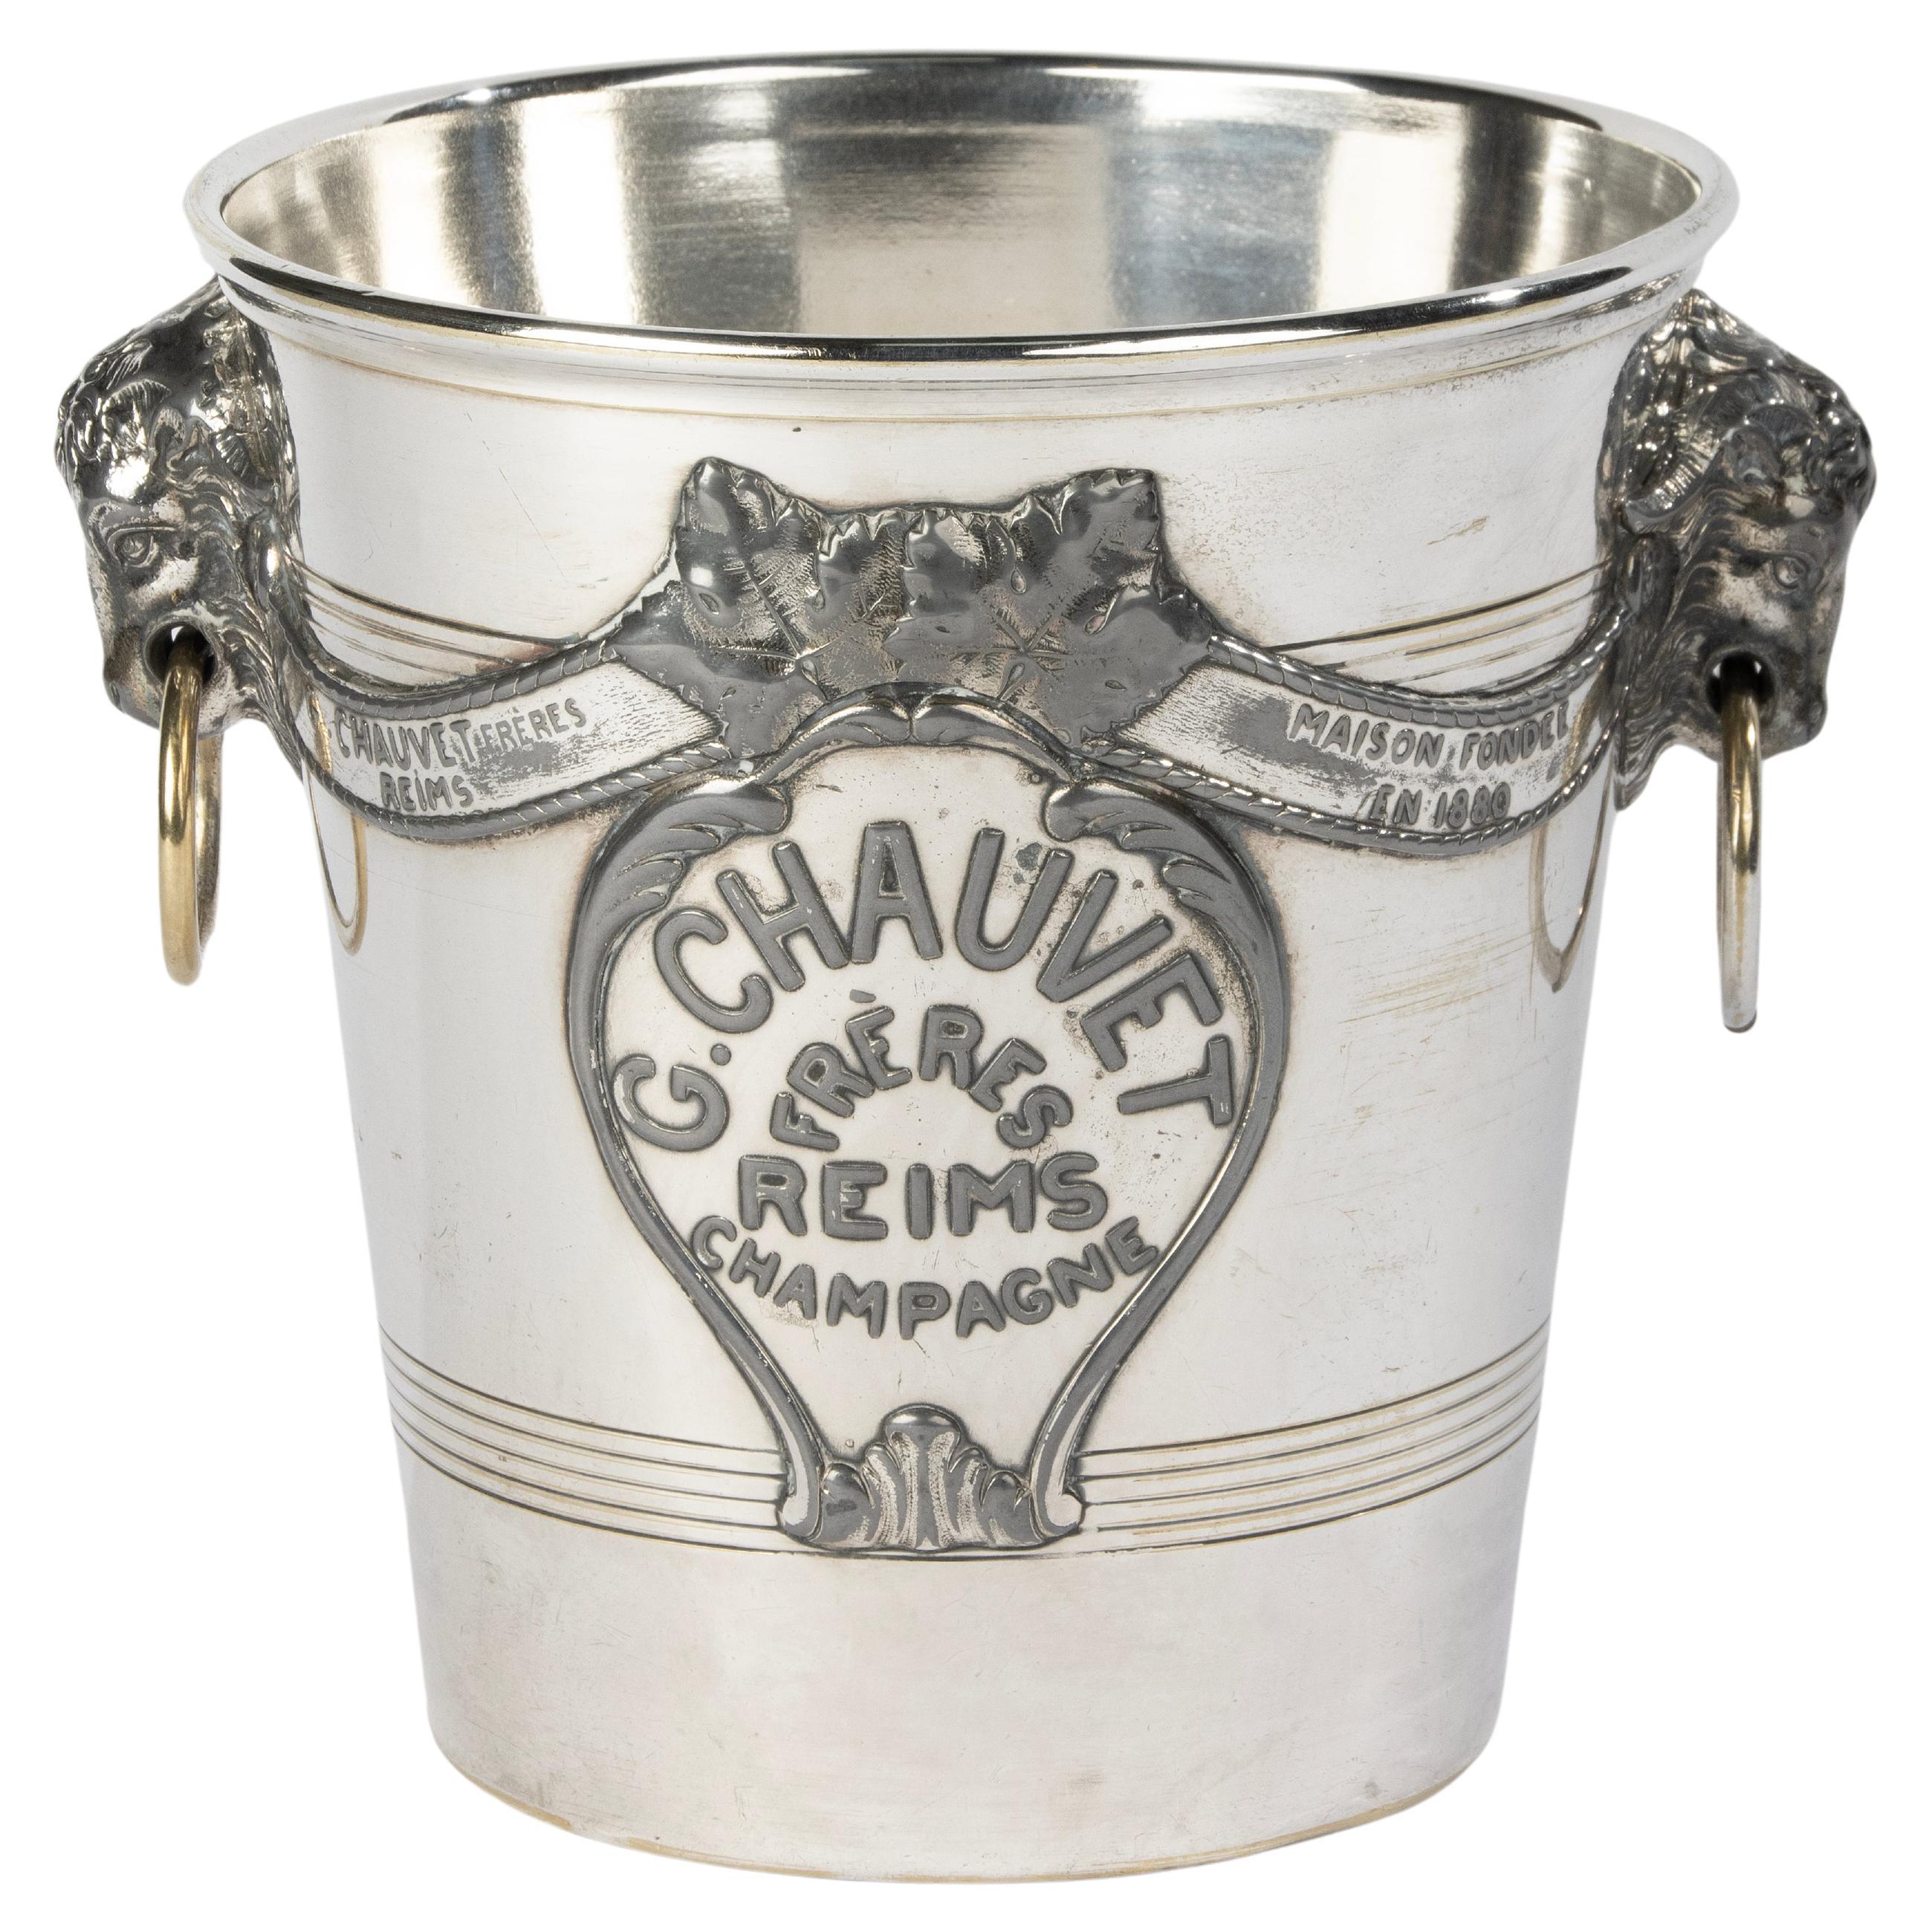 Antique Silver-Plated Champagne Cooler - Agit Paris for Maison G. Chauvet Reims For Sale